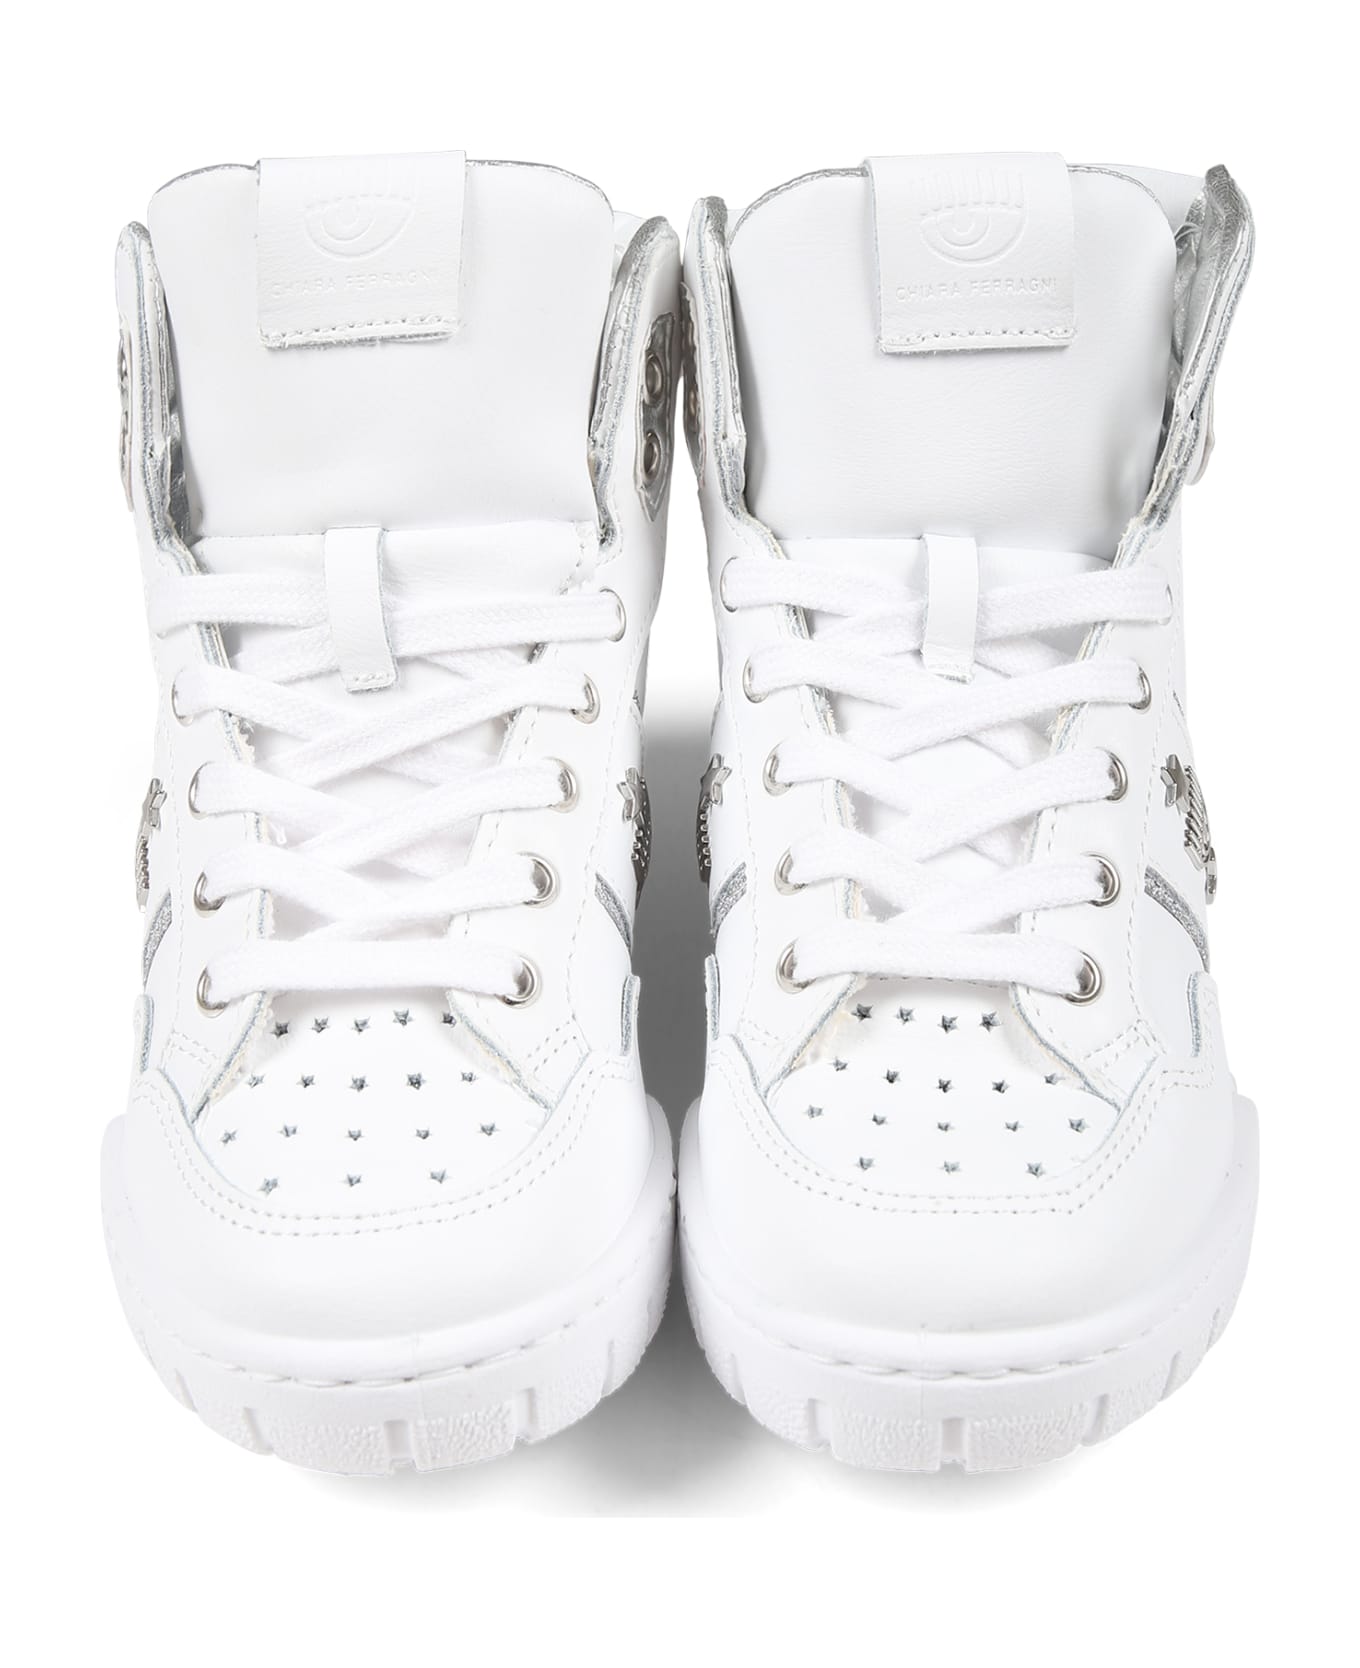 Chiara Ferragni White Sneakers For Girl With Eyestar - White シューズ